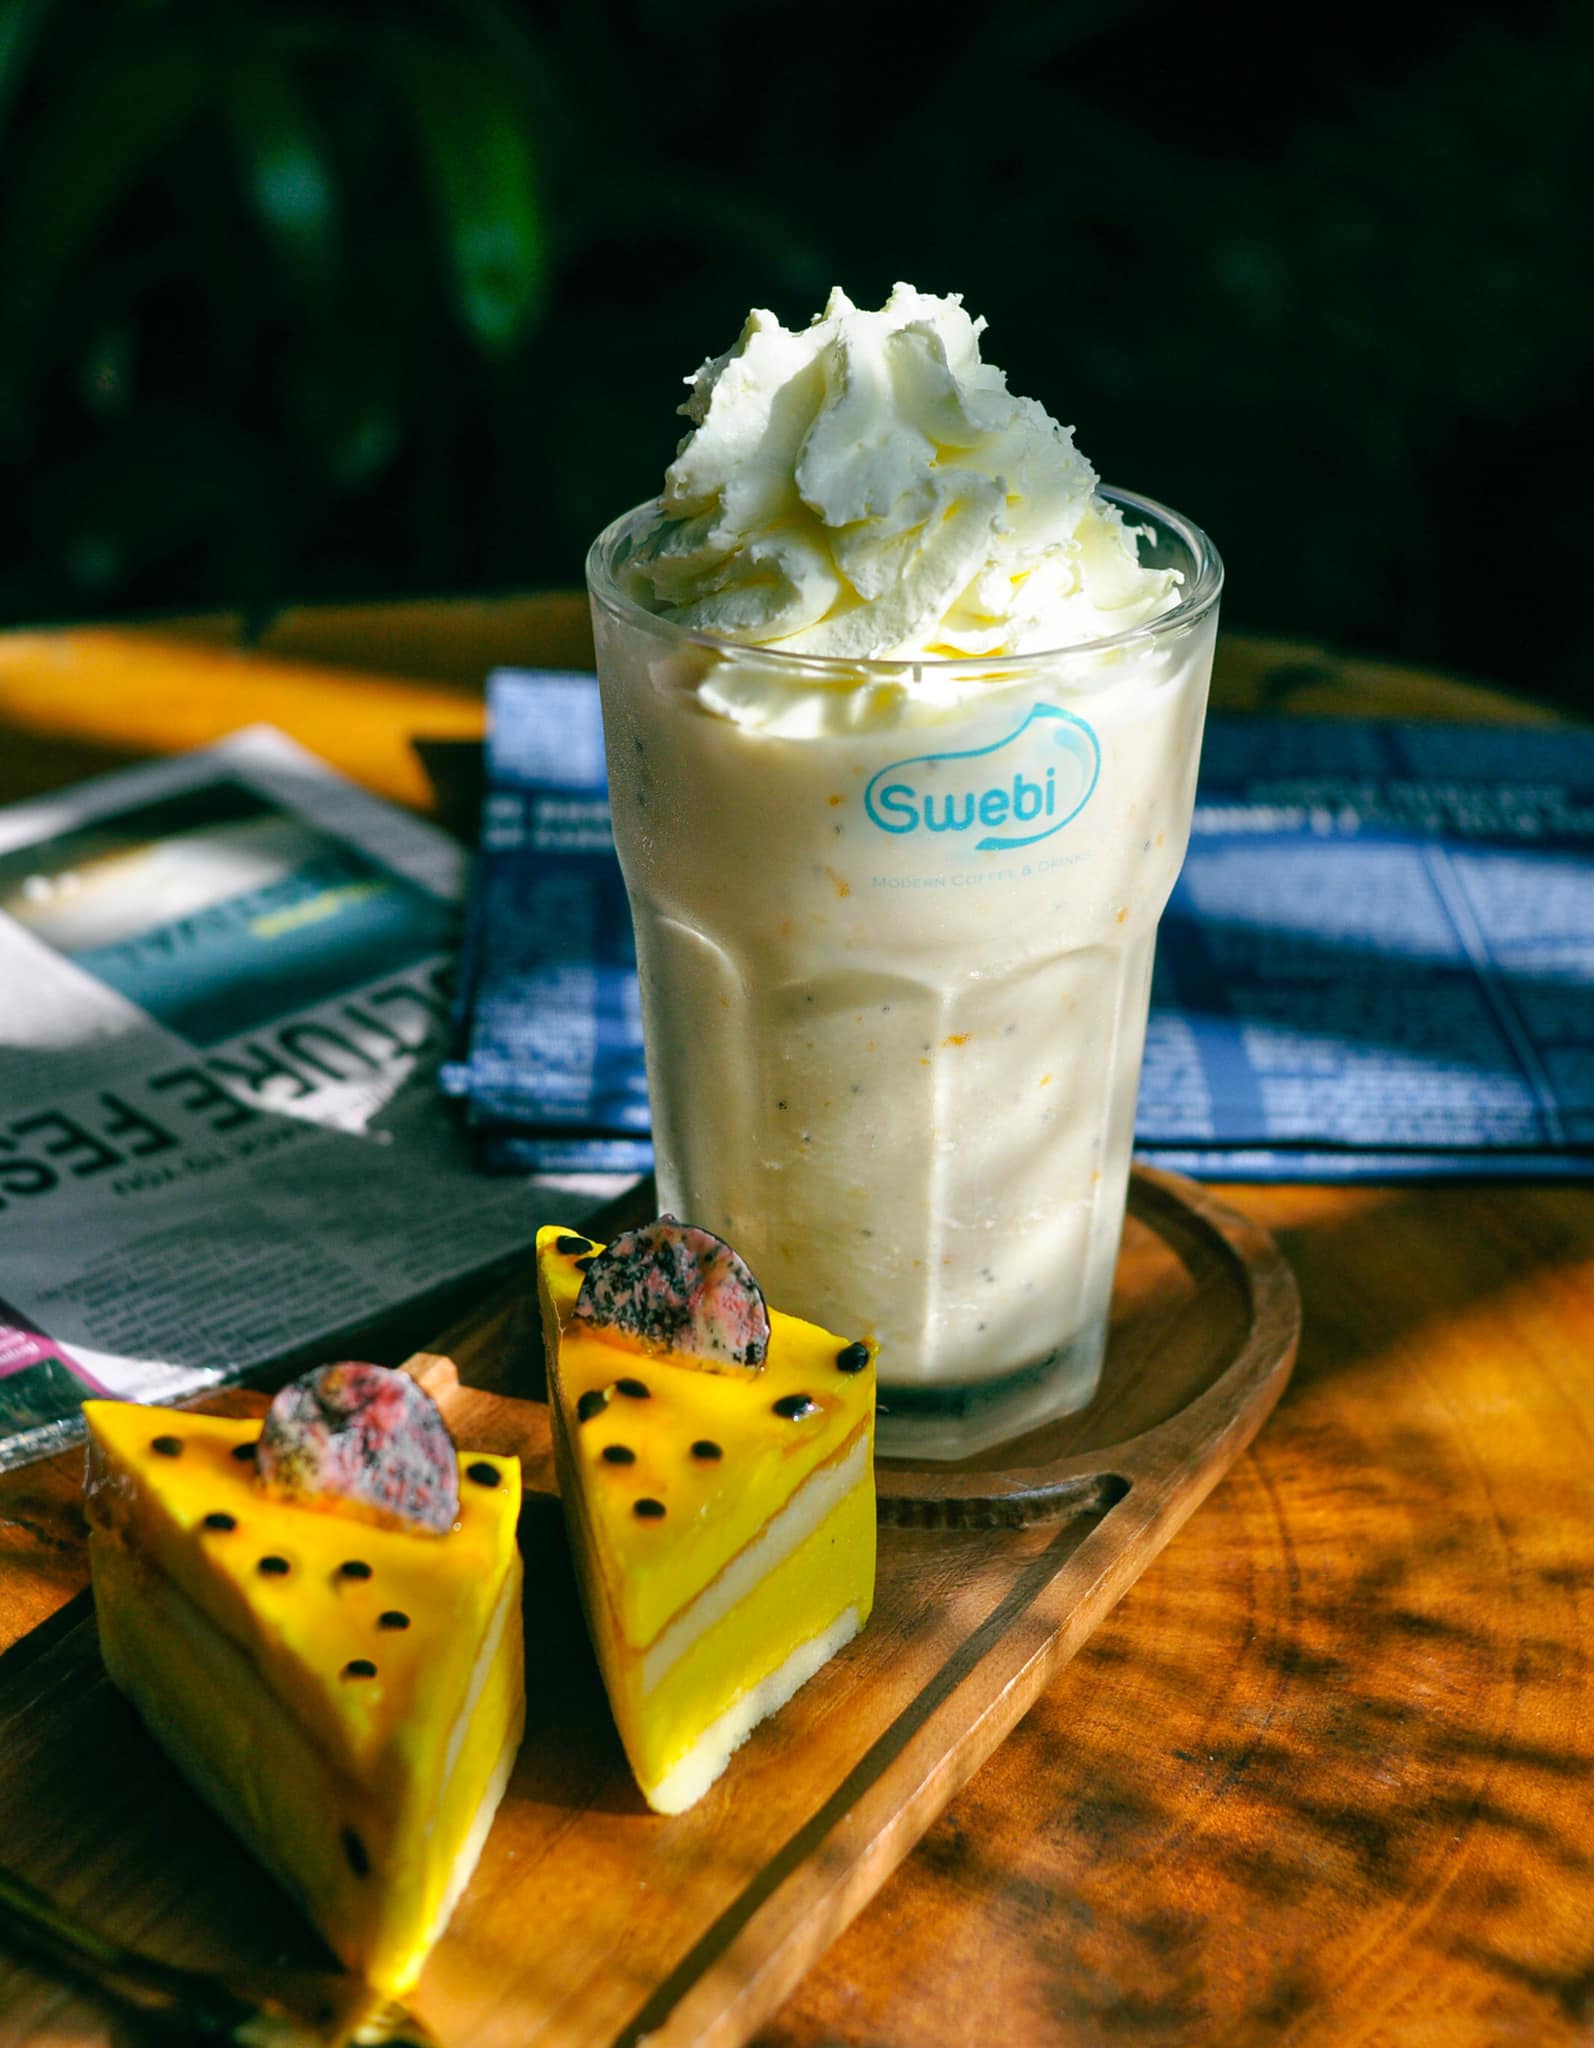 Ngoài không gian quán xinh đẹp, thì Swebi còn nổi tiếng với món nước tiramisu coffee ice – blened hoặc cà phê đá xay plan trứng cực kì thơm ngon